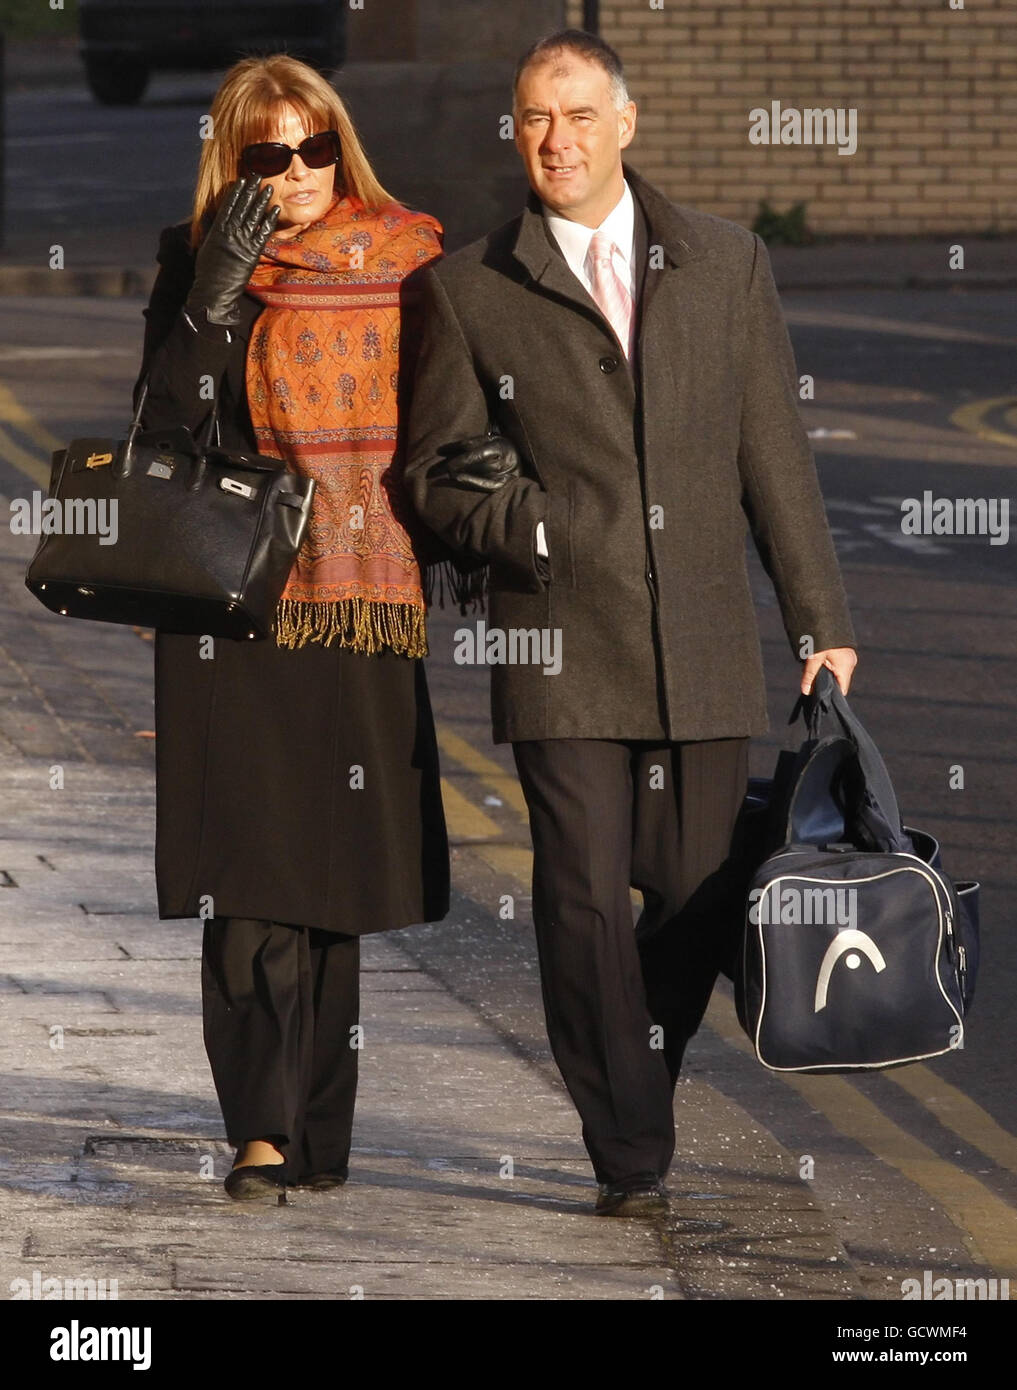 Tommy e Gail Sheridan arrivano alla High Court di Glasgow, dove sono sotto processo accusati di aver mentito sotto giuramento durante la riuscita azione di diffamazione del signor Sheridan contro il giornale News of the World del 2006. Foto Stock